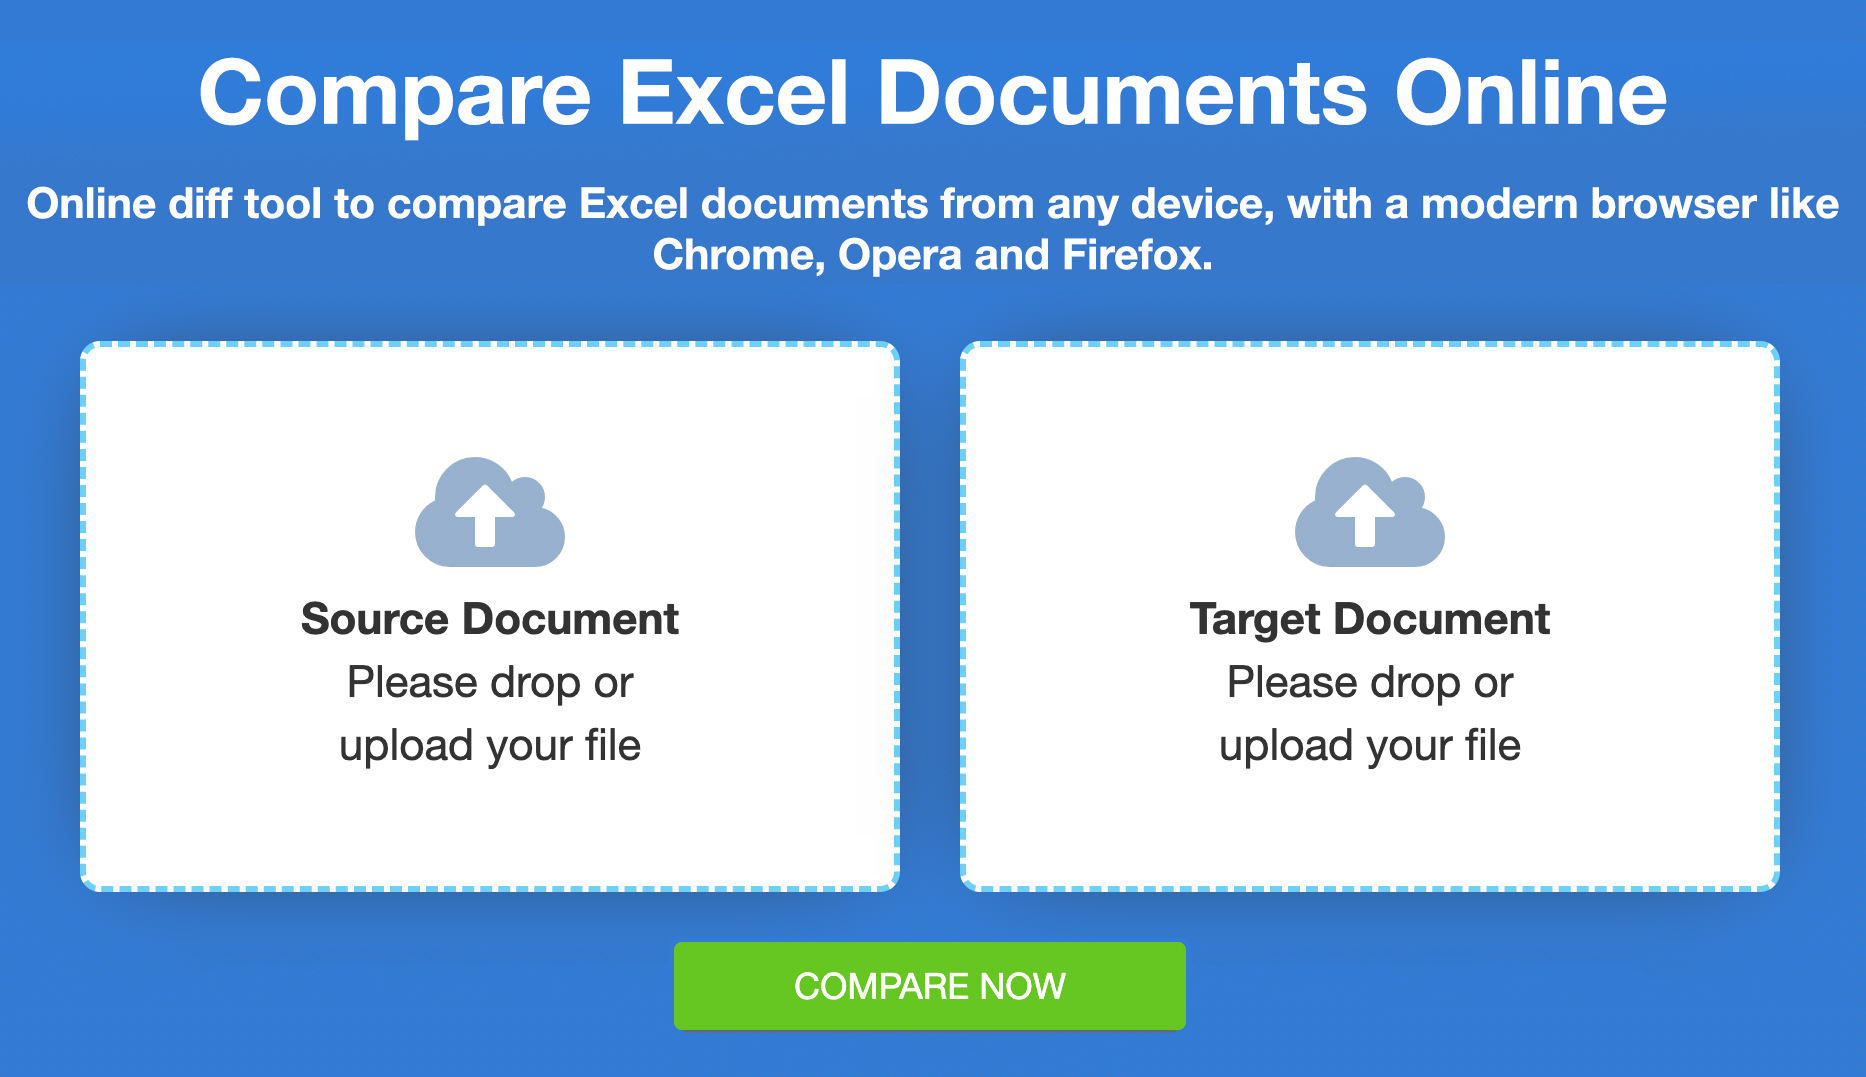 比较 Excel 文件 - 在线免费比较